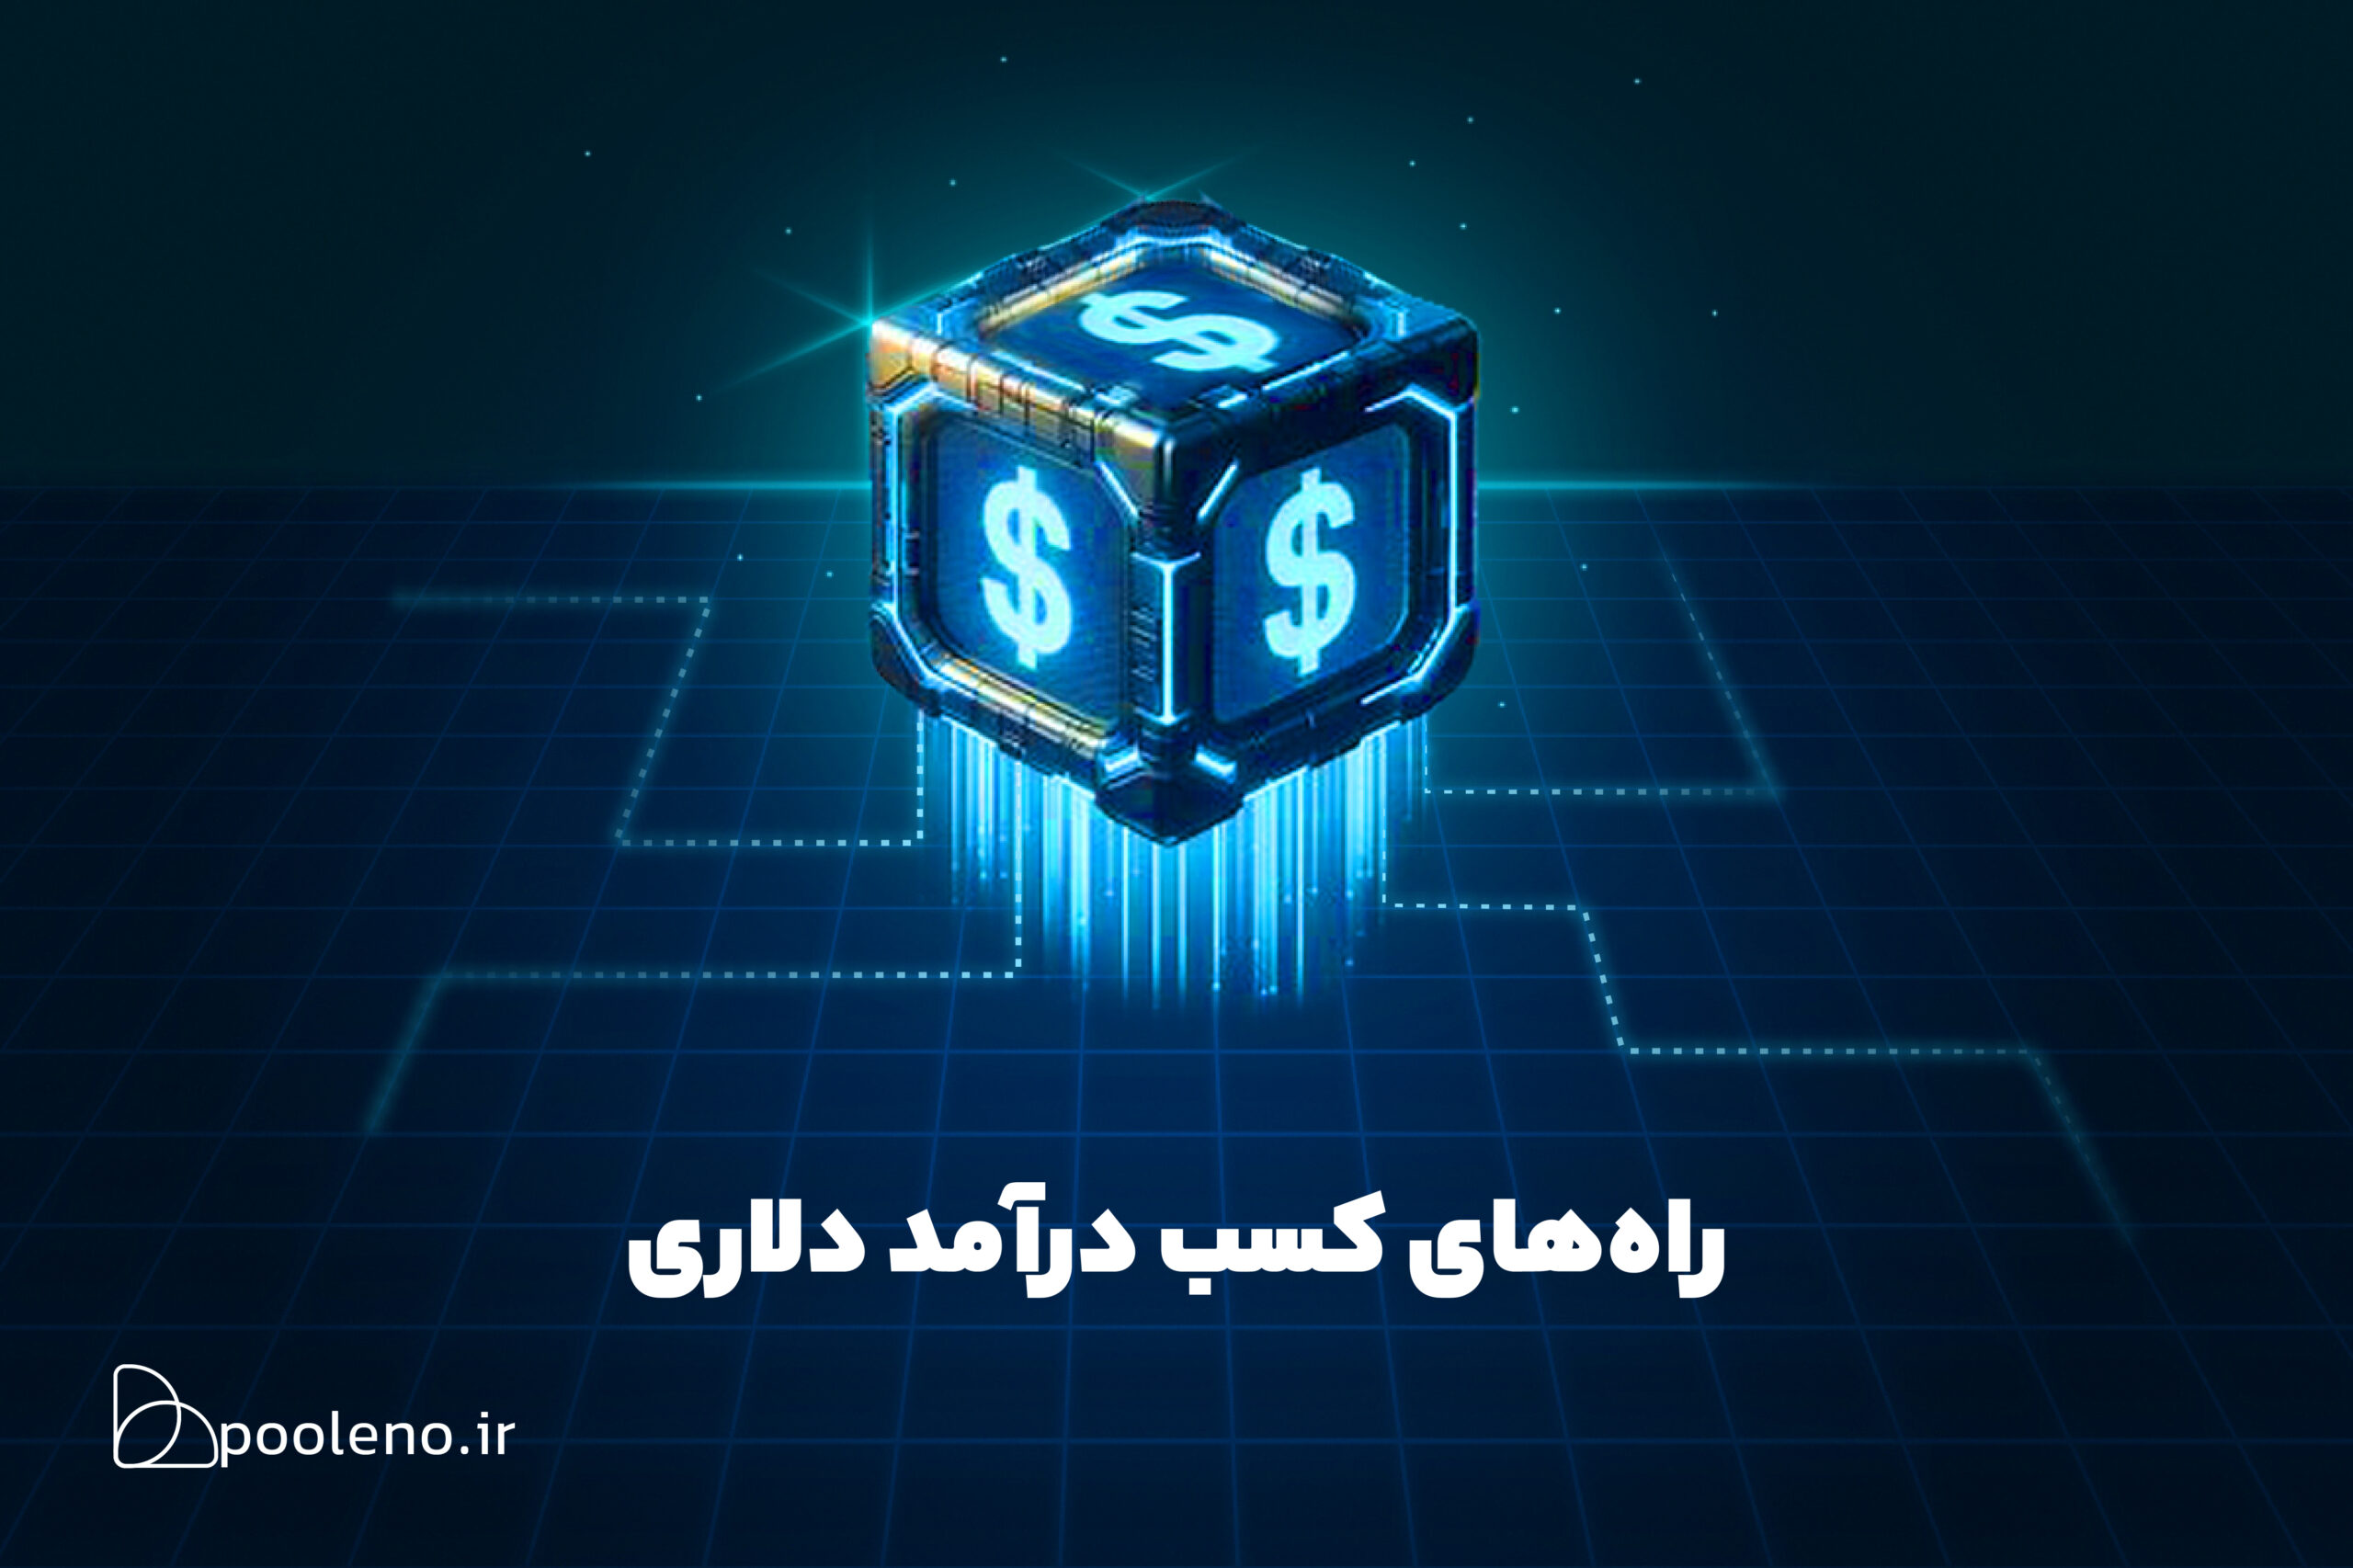 راهنمای جامع کسب درآمد دلاری در ایران: از رویا تا واقعیت